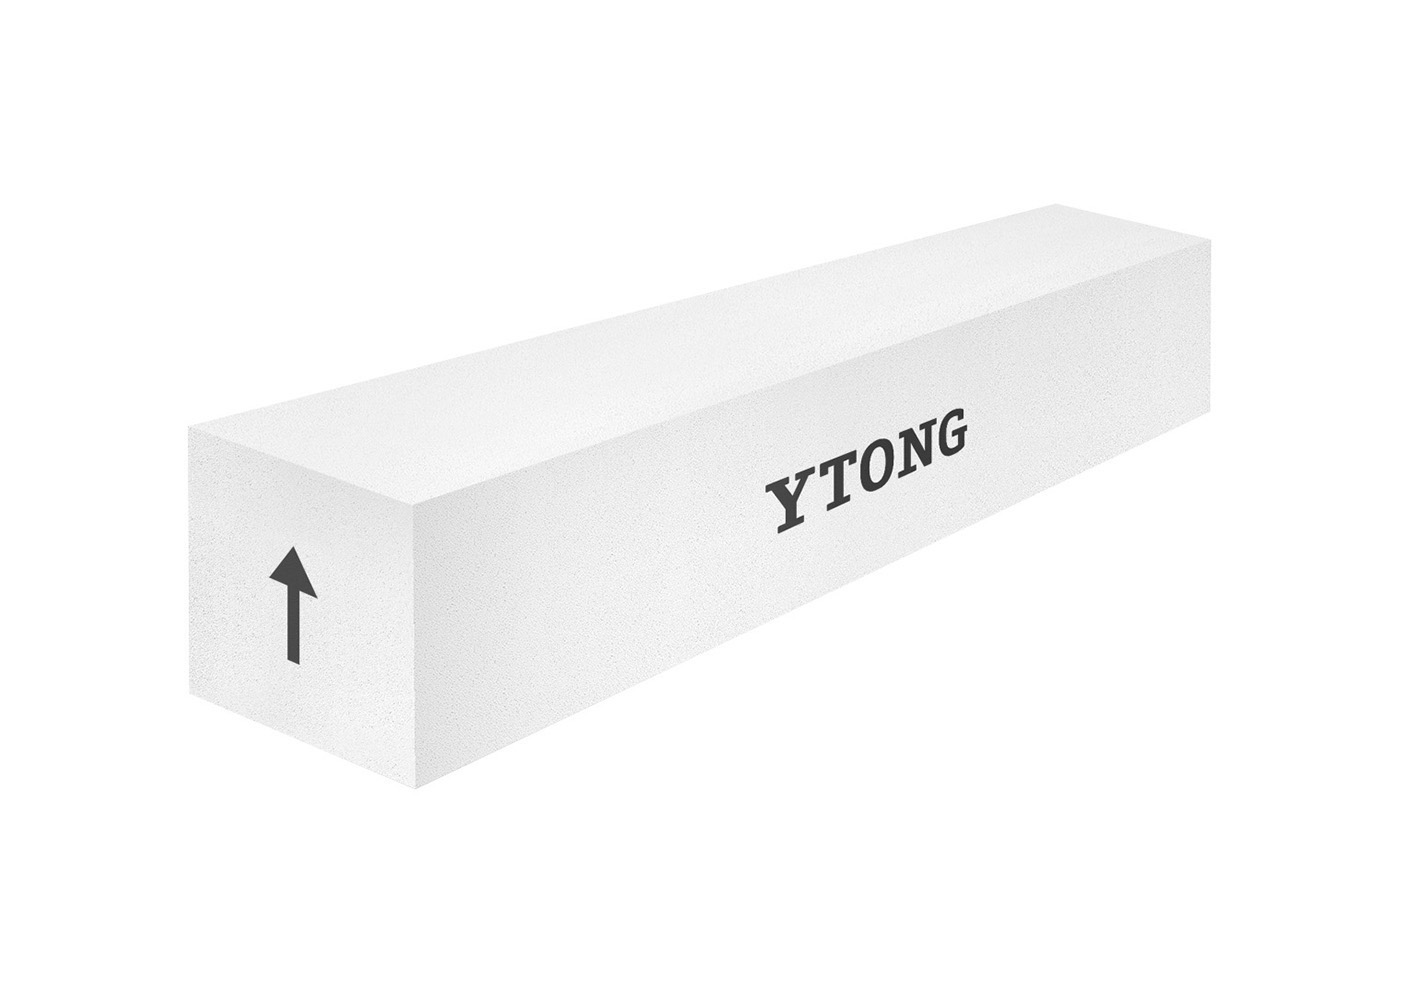 YTONG nosný překlad šířky 375 mm, délky 2000 mm